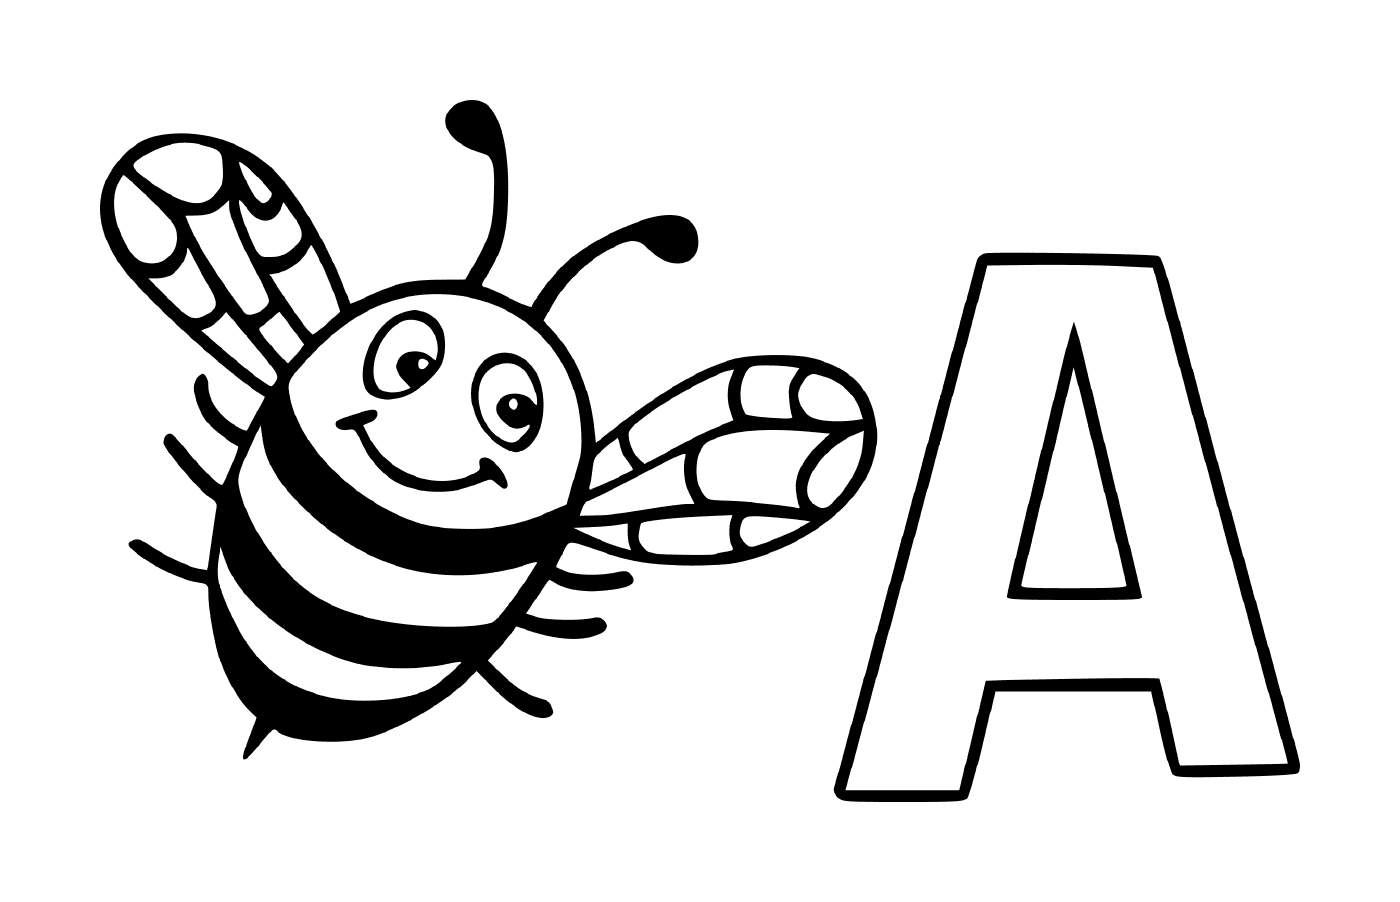  字母 A 有蜜蜂的字母 A 